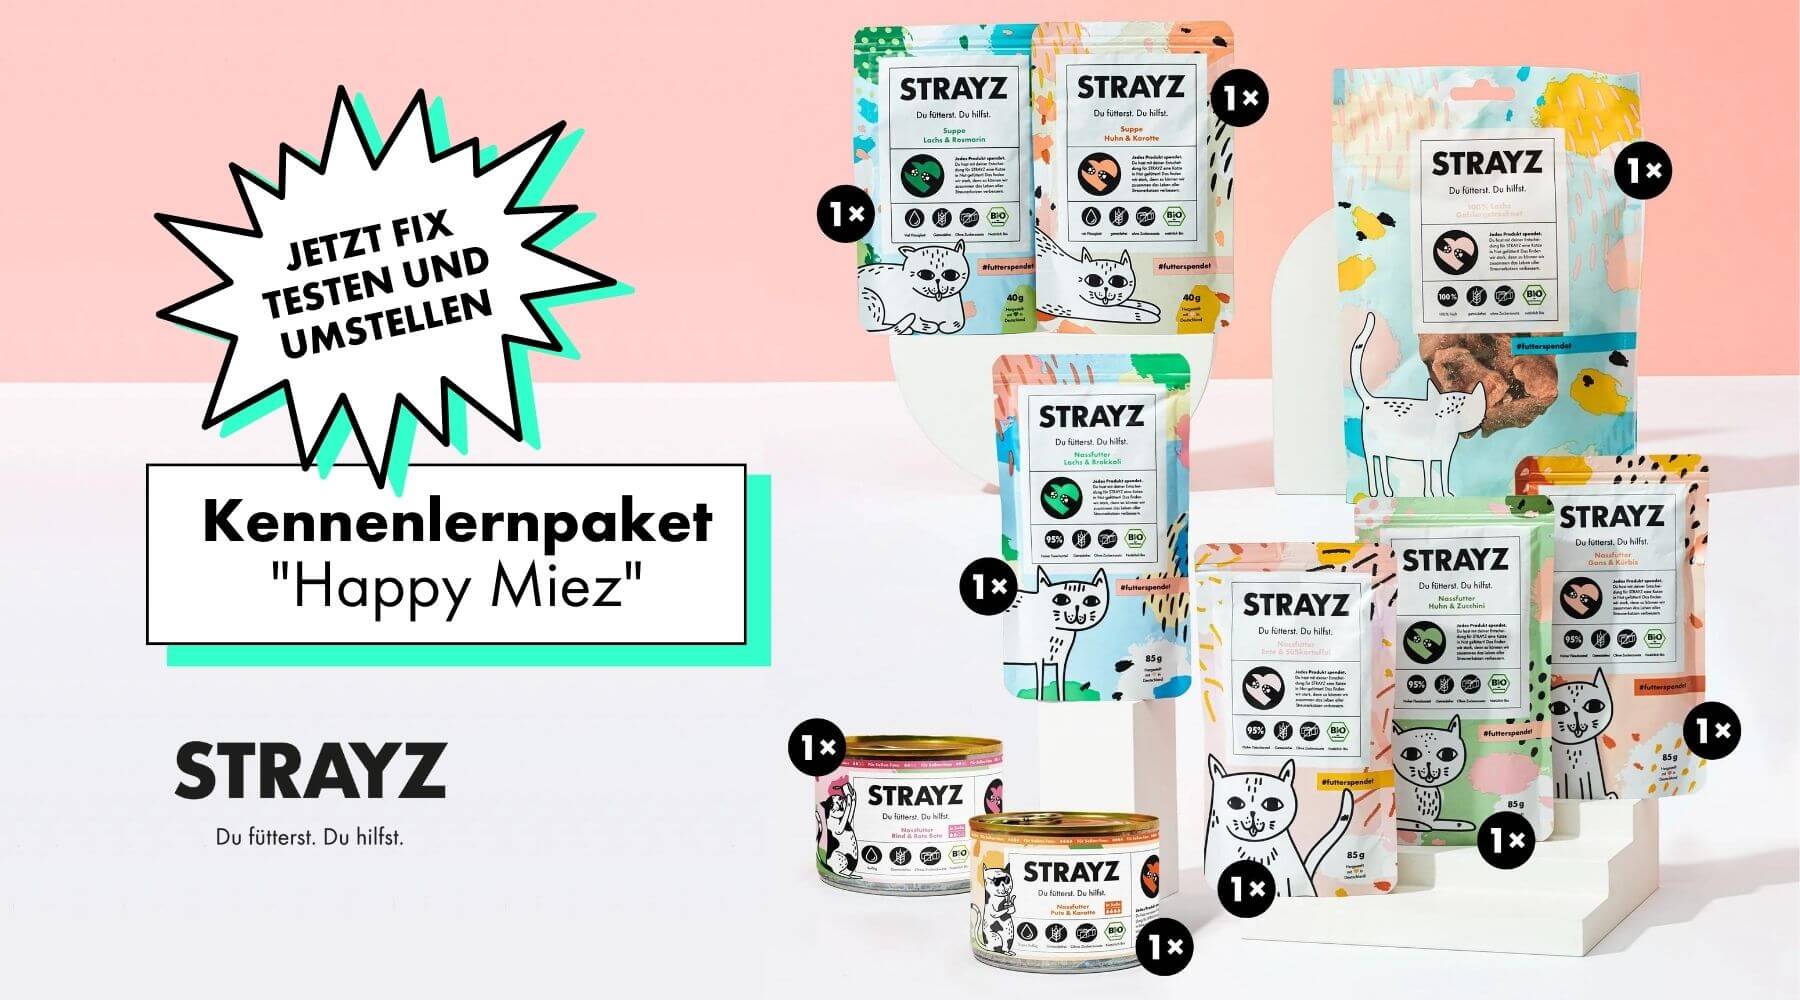 Kennenlernpaket Happy Miez von STRAYZ Bio Katzenfutter, das Paket für die Futterumstellung bei Katzen.